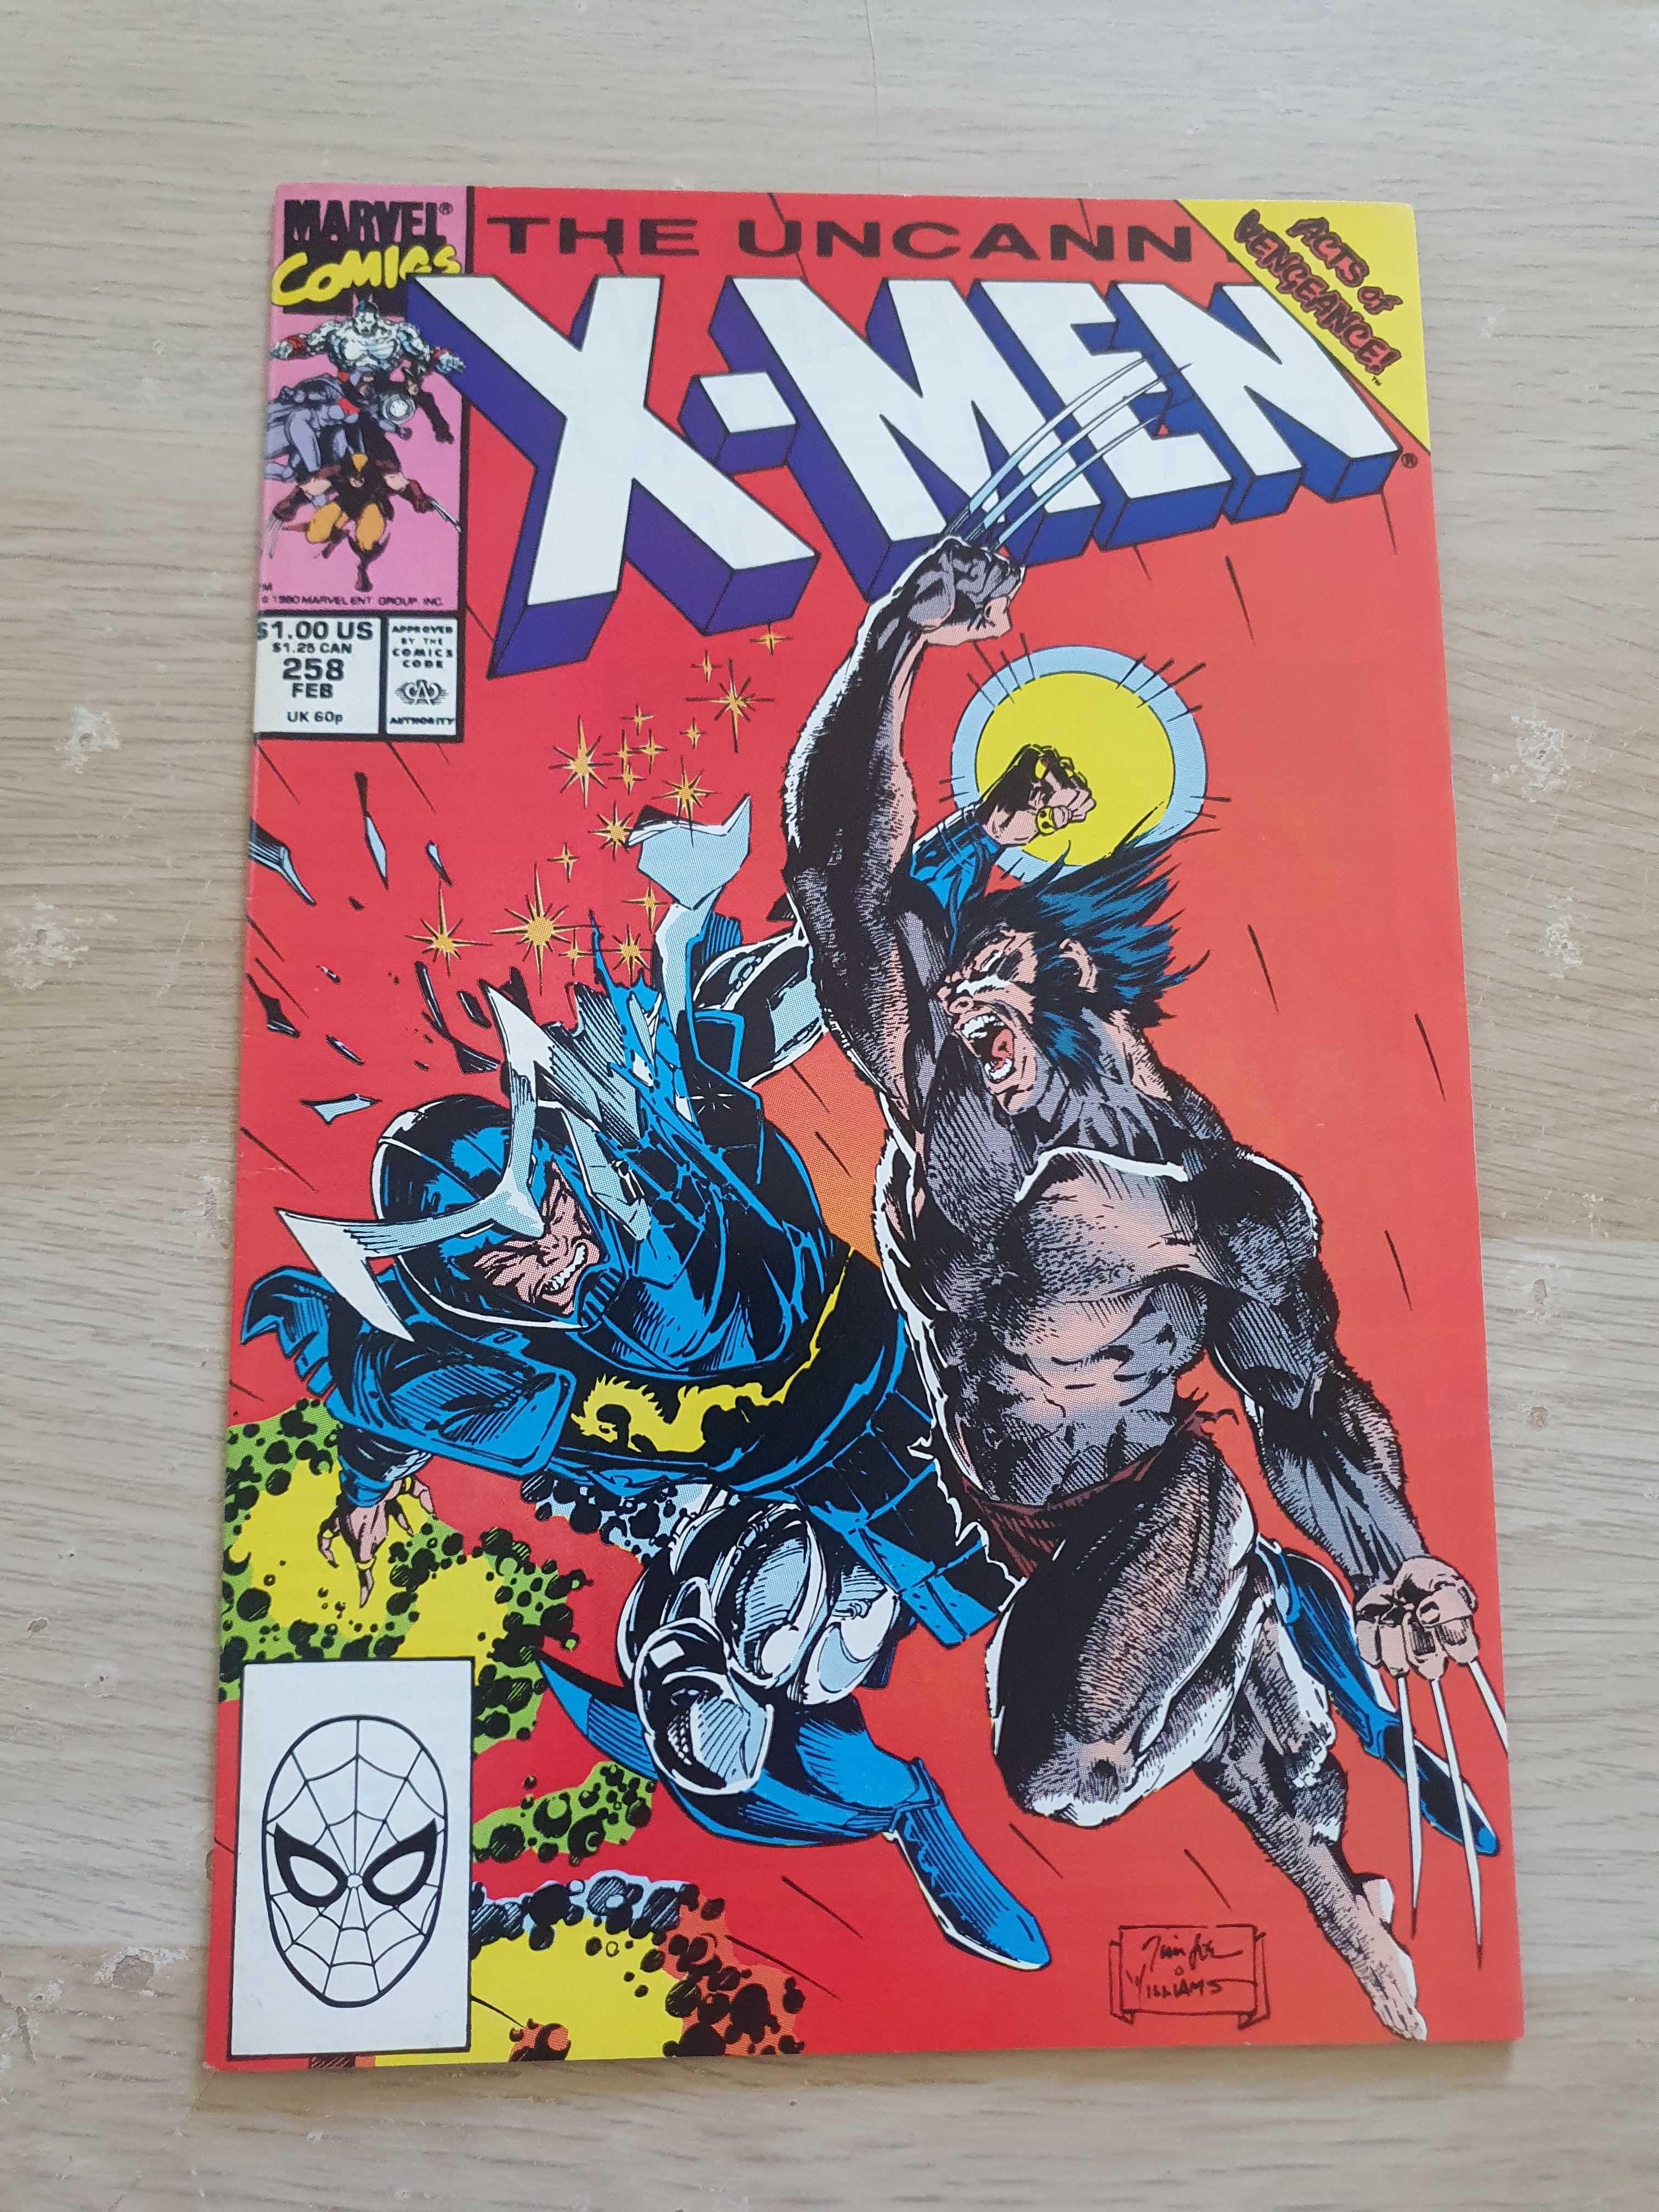 The uncanny X-men vol. 1: 257, 258 - Jim Lee (ZM121)